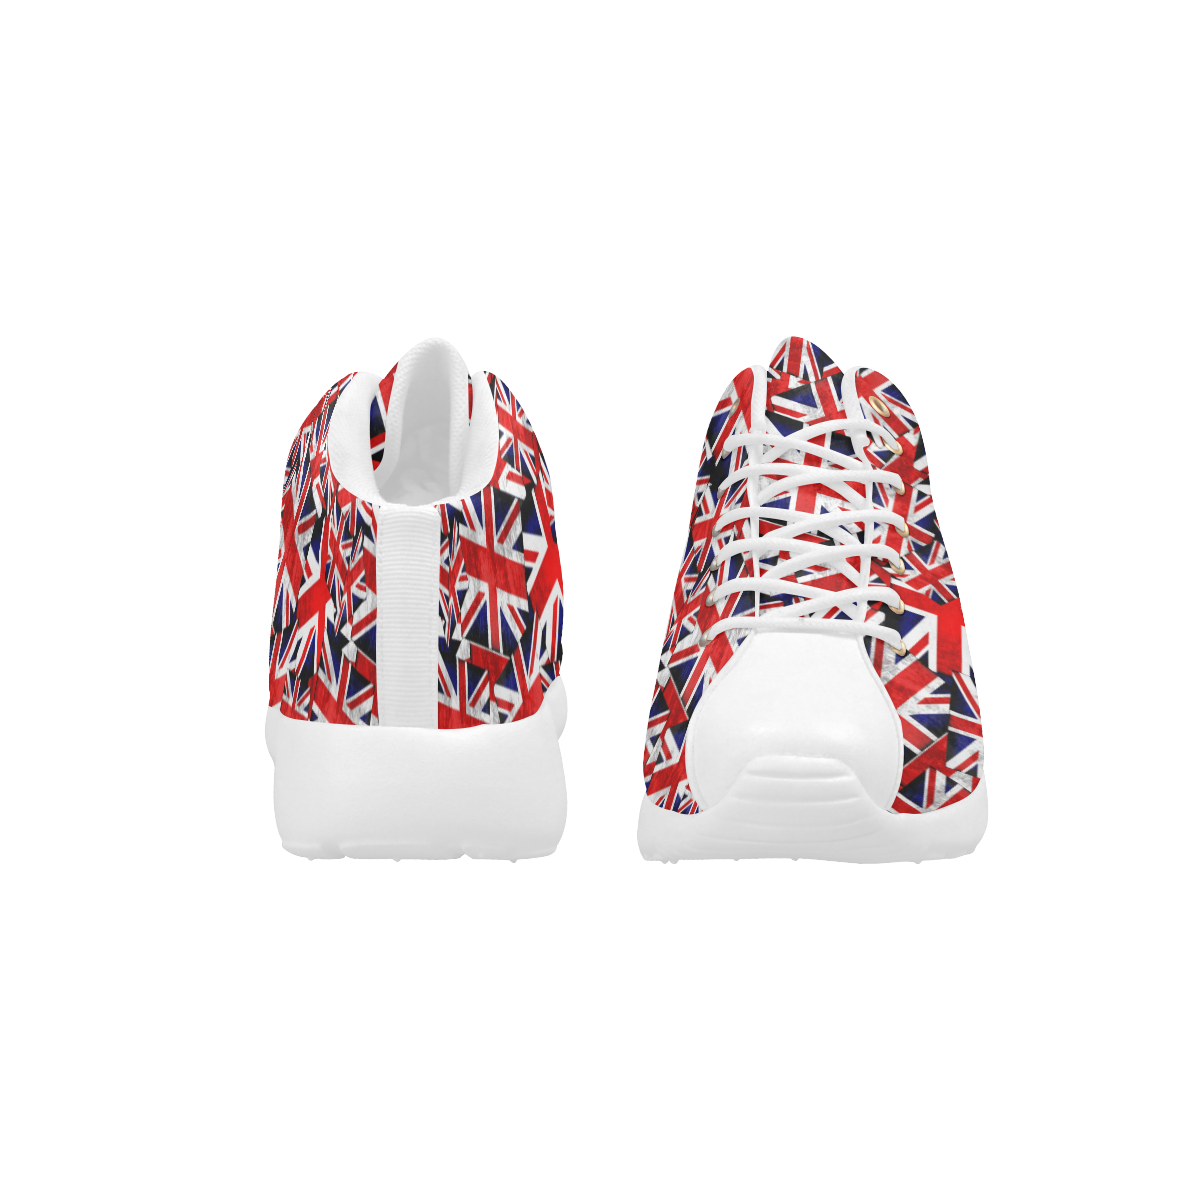 Union Jack British UK Flag Men's Basketball Training Shoes (Model 47502)